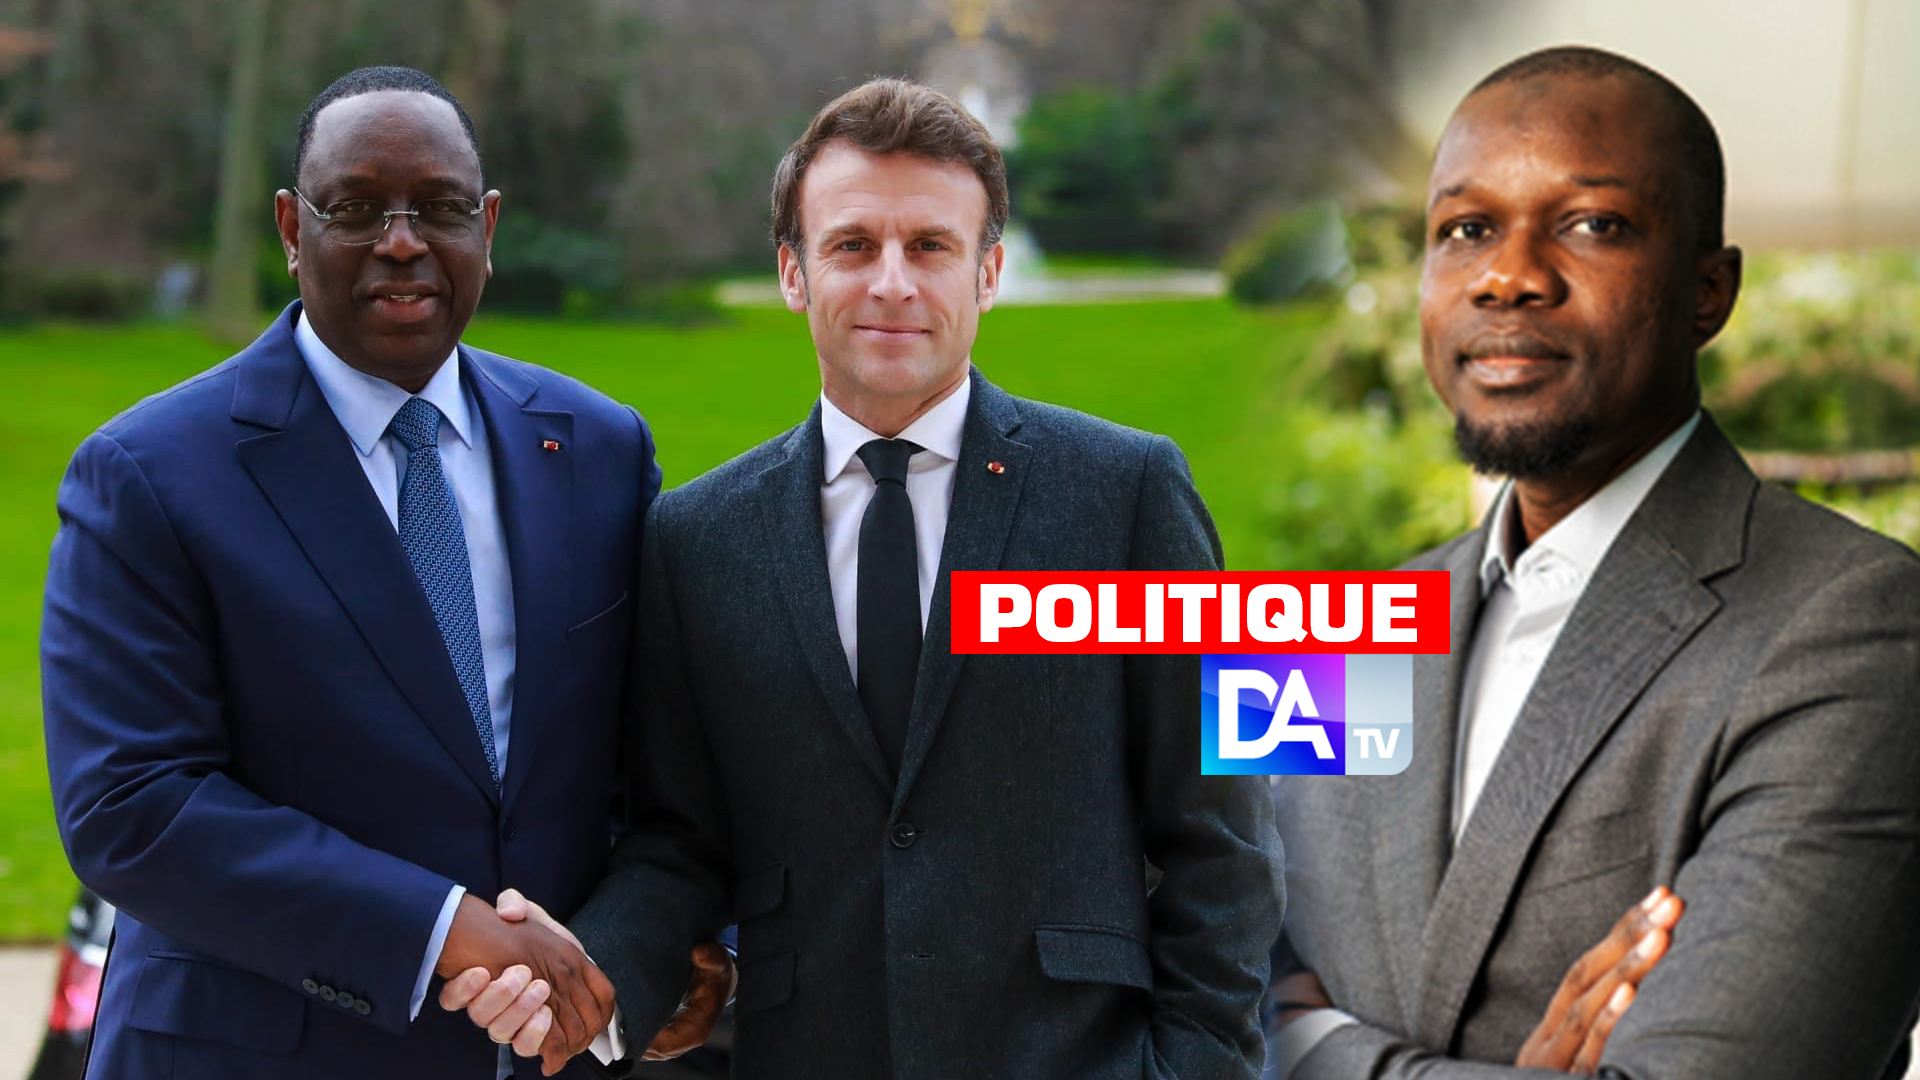 Rencontre du numéro 2 de la cellule Afrique de l'elysée avec Ousmane Sonko : Macky Sall rumine sa colère contre Macron